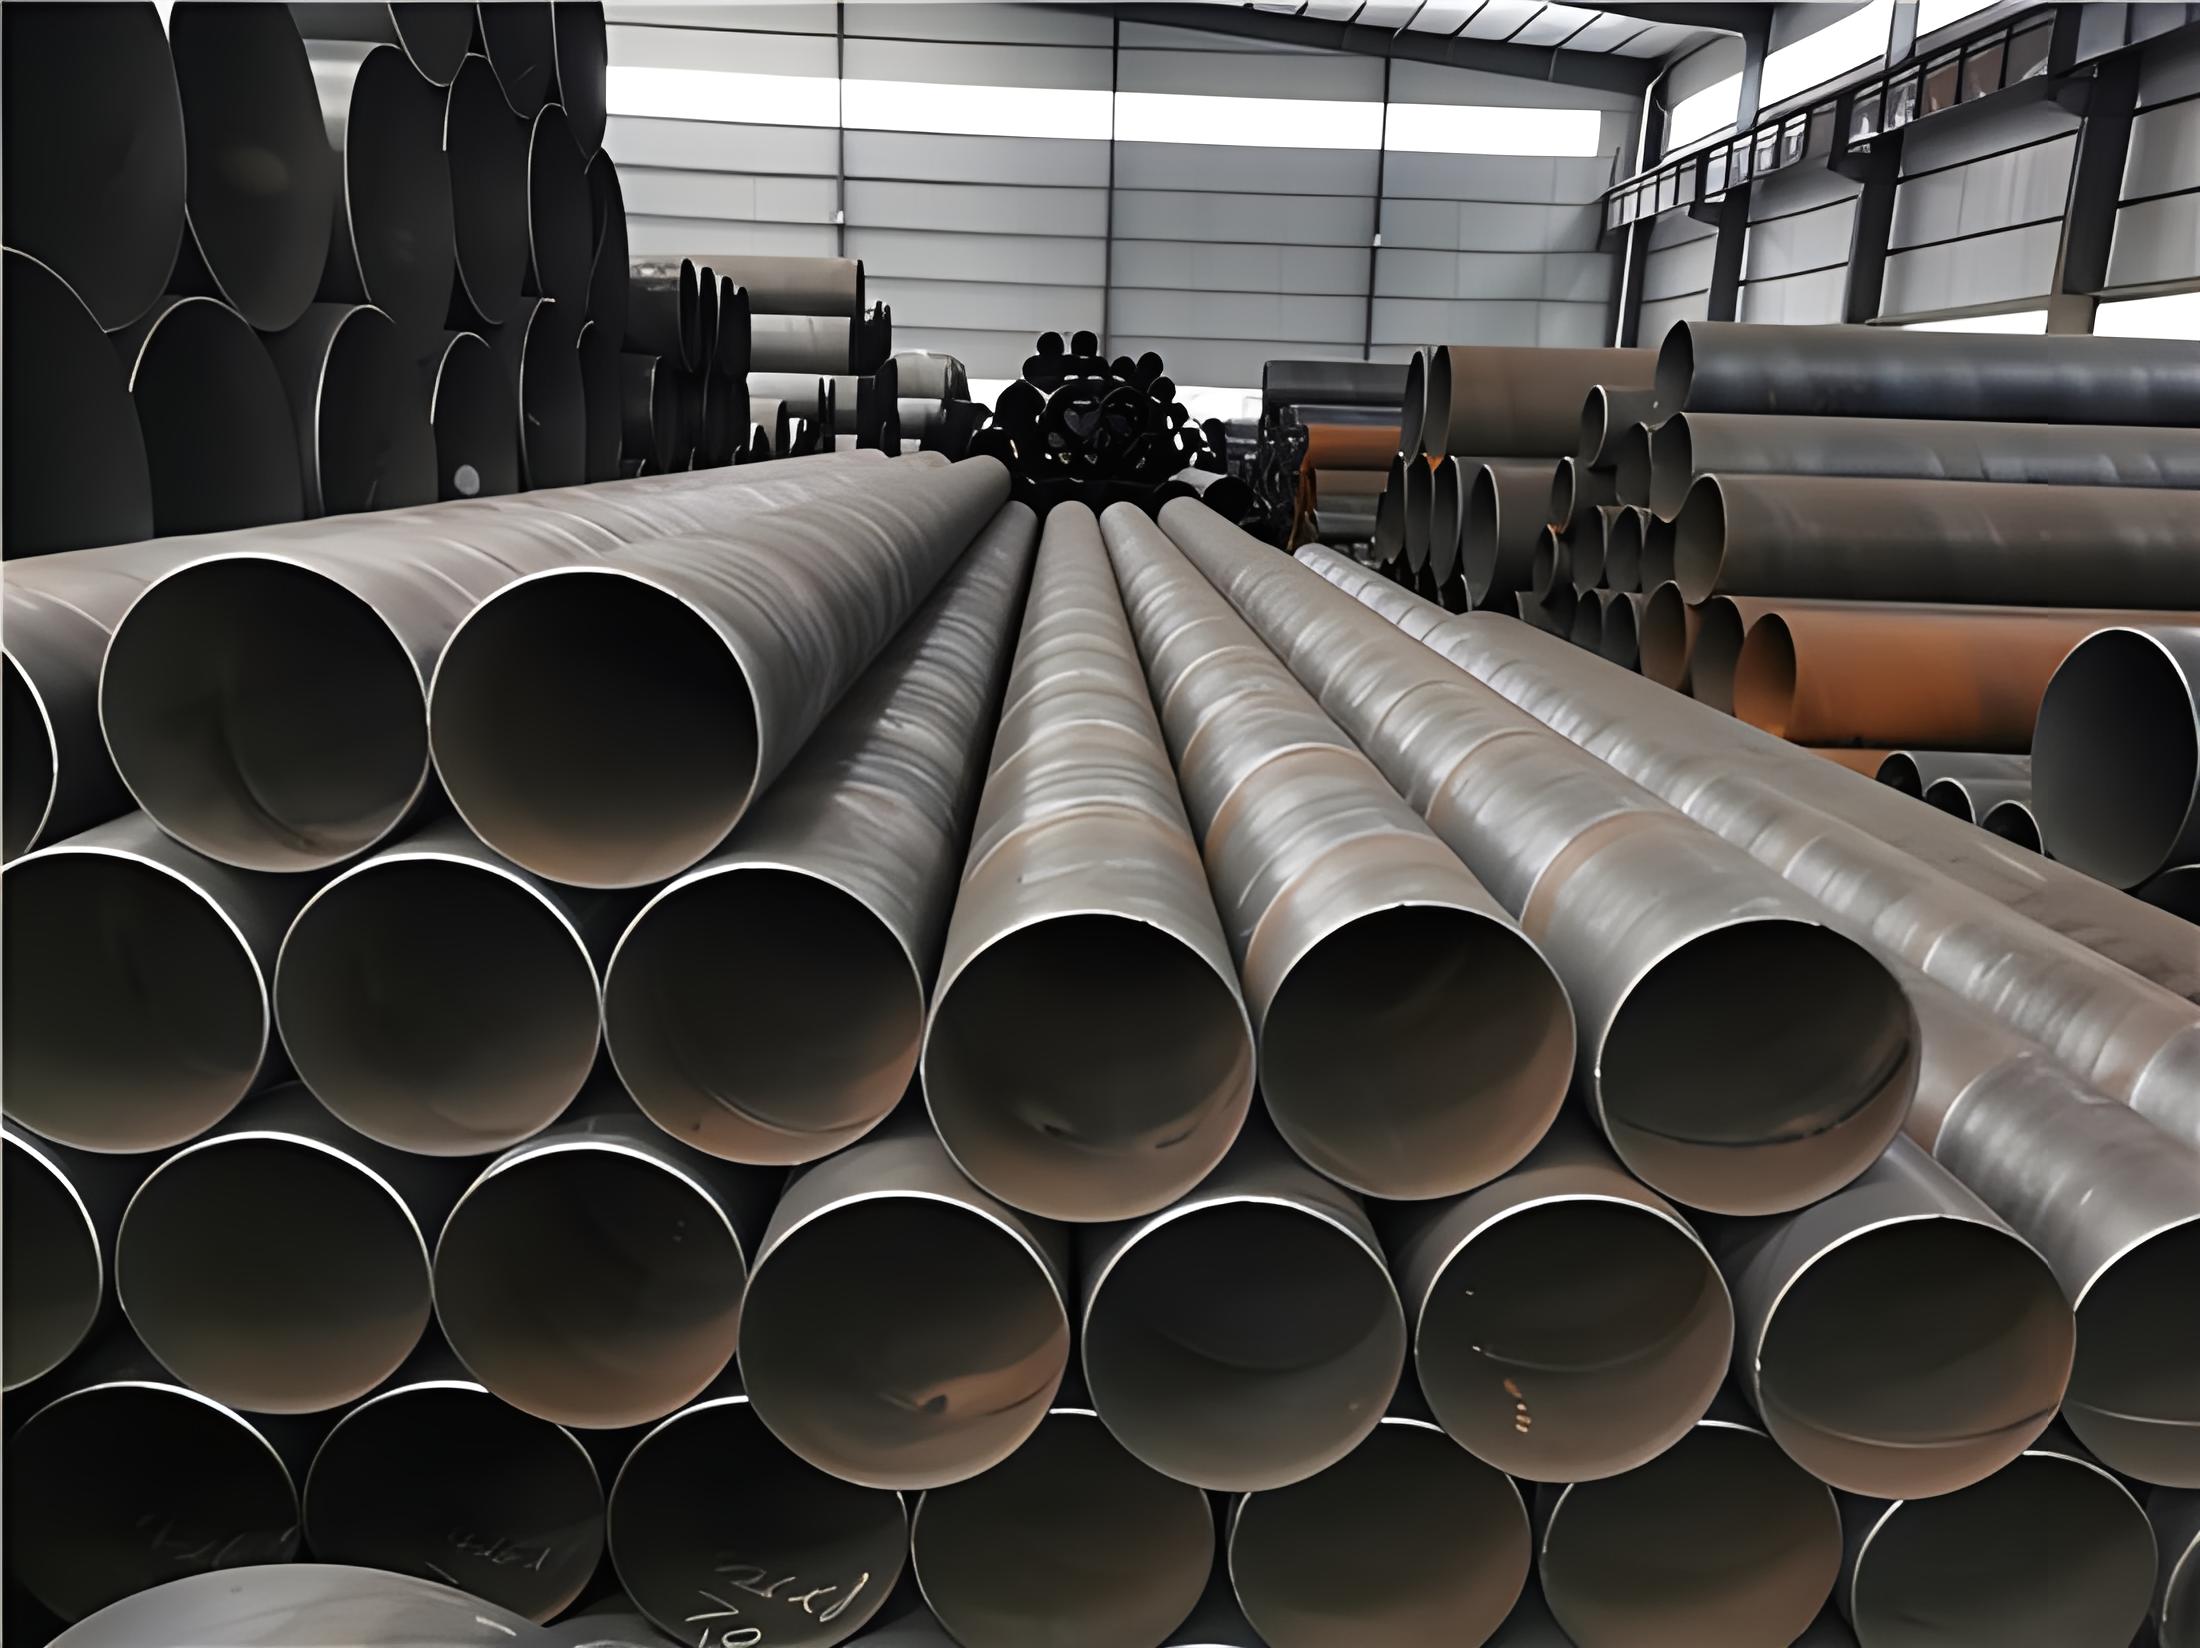 牡丹江螺旋钢管现代工业建设的坚实基石